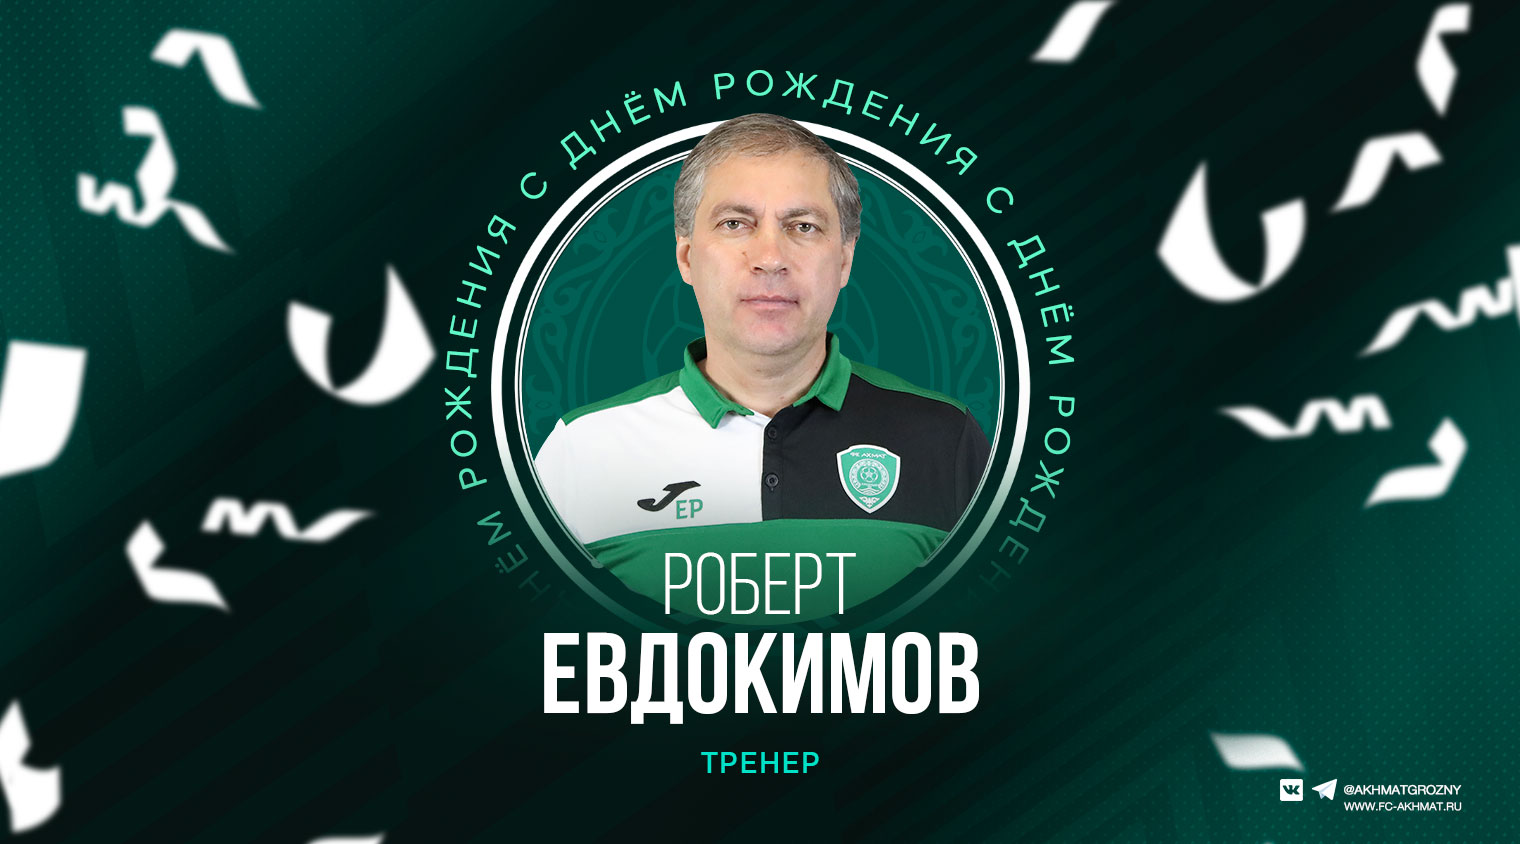 Поздравляем с Днём Рождения Роберта Евдокимова!